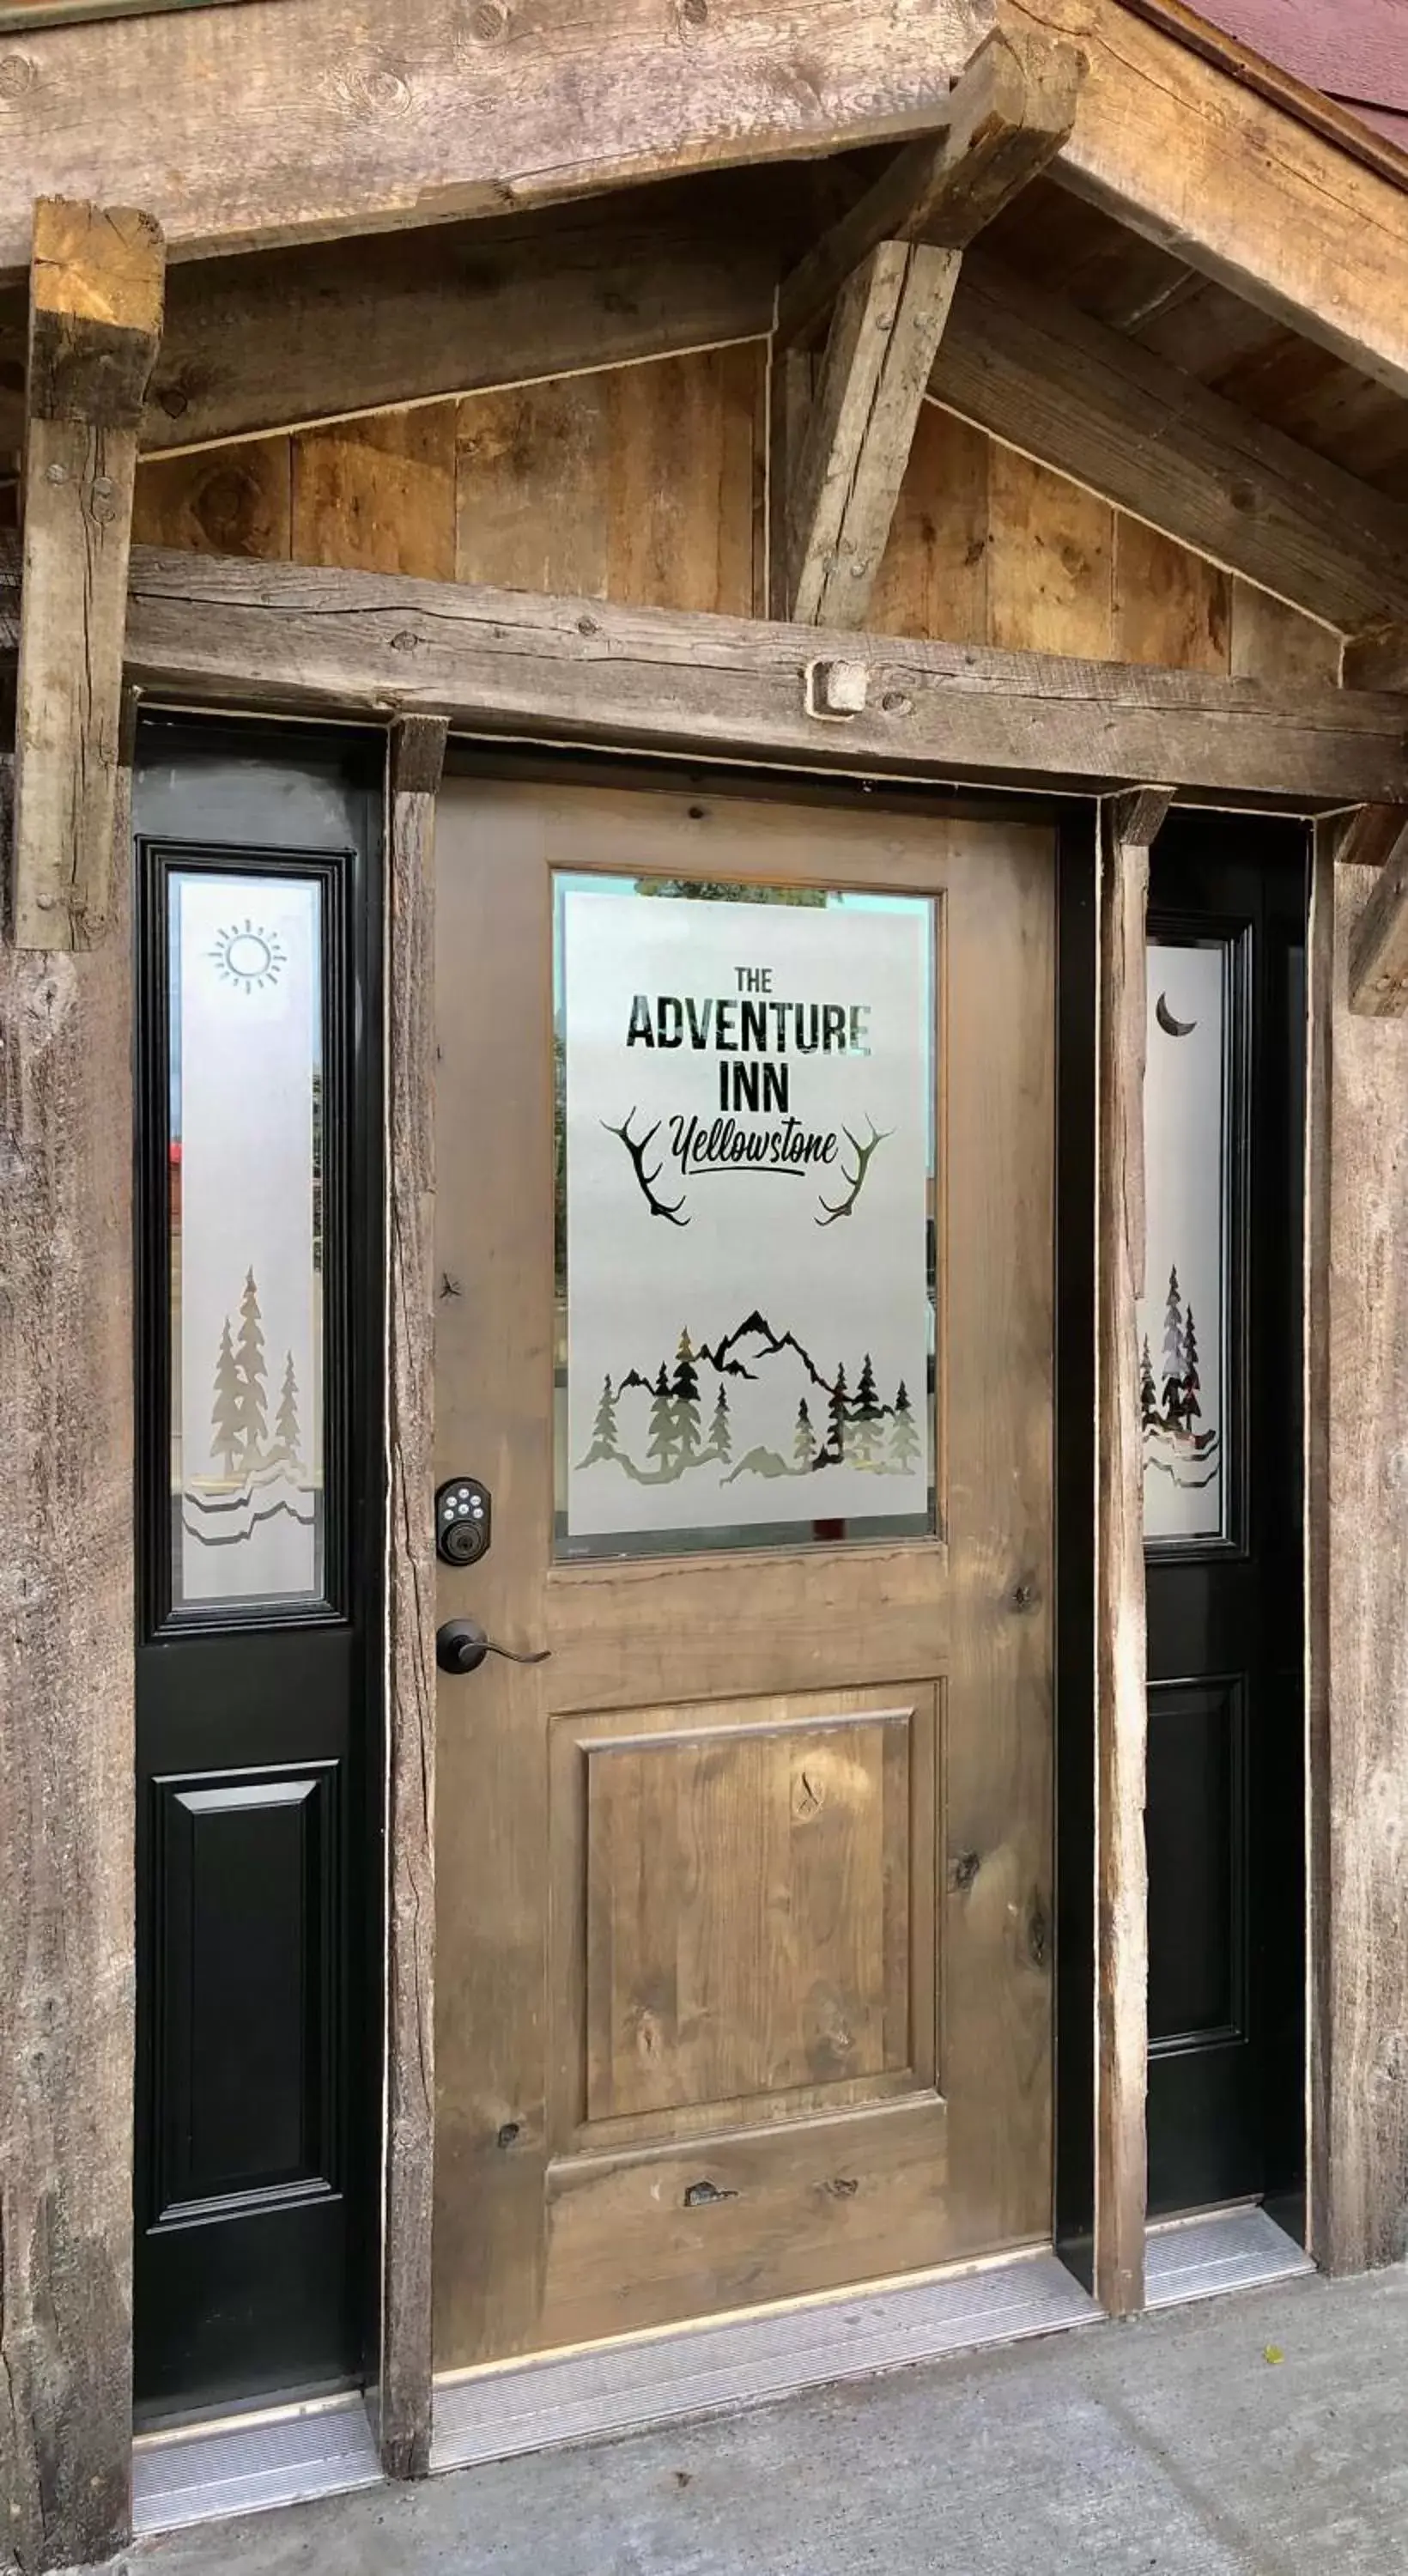 Facade/entrance in The Adventure Inn Yellowstone